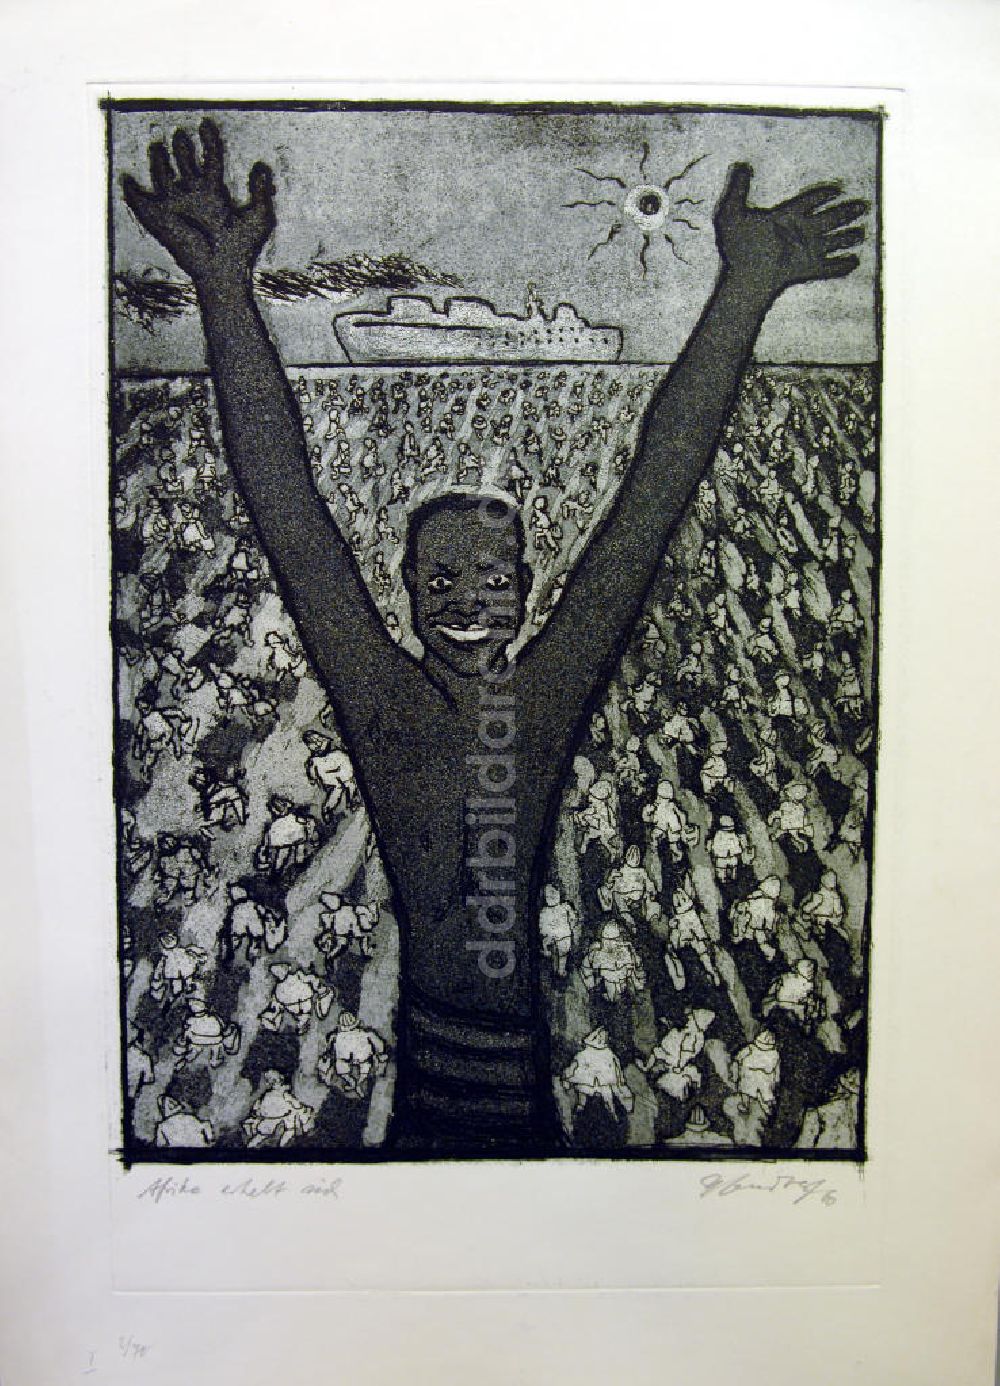 DDR-Bildarchiv: Berlin - Grafik von Herbert Sandberg Afrika erhebt sich aus dem Jahr 1960